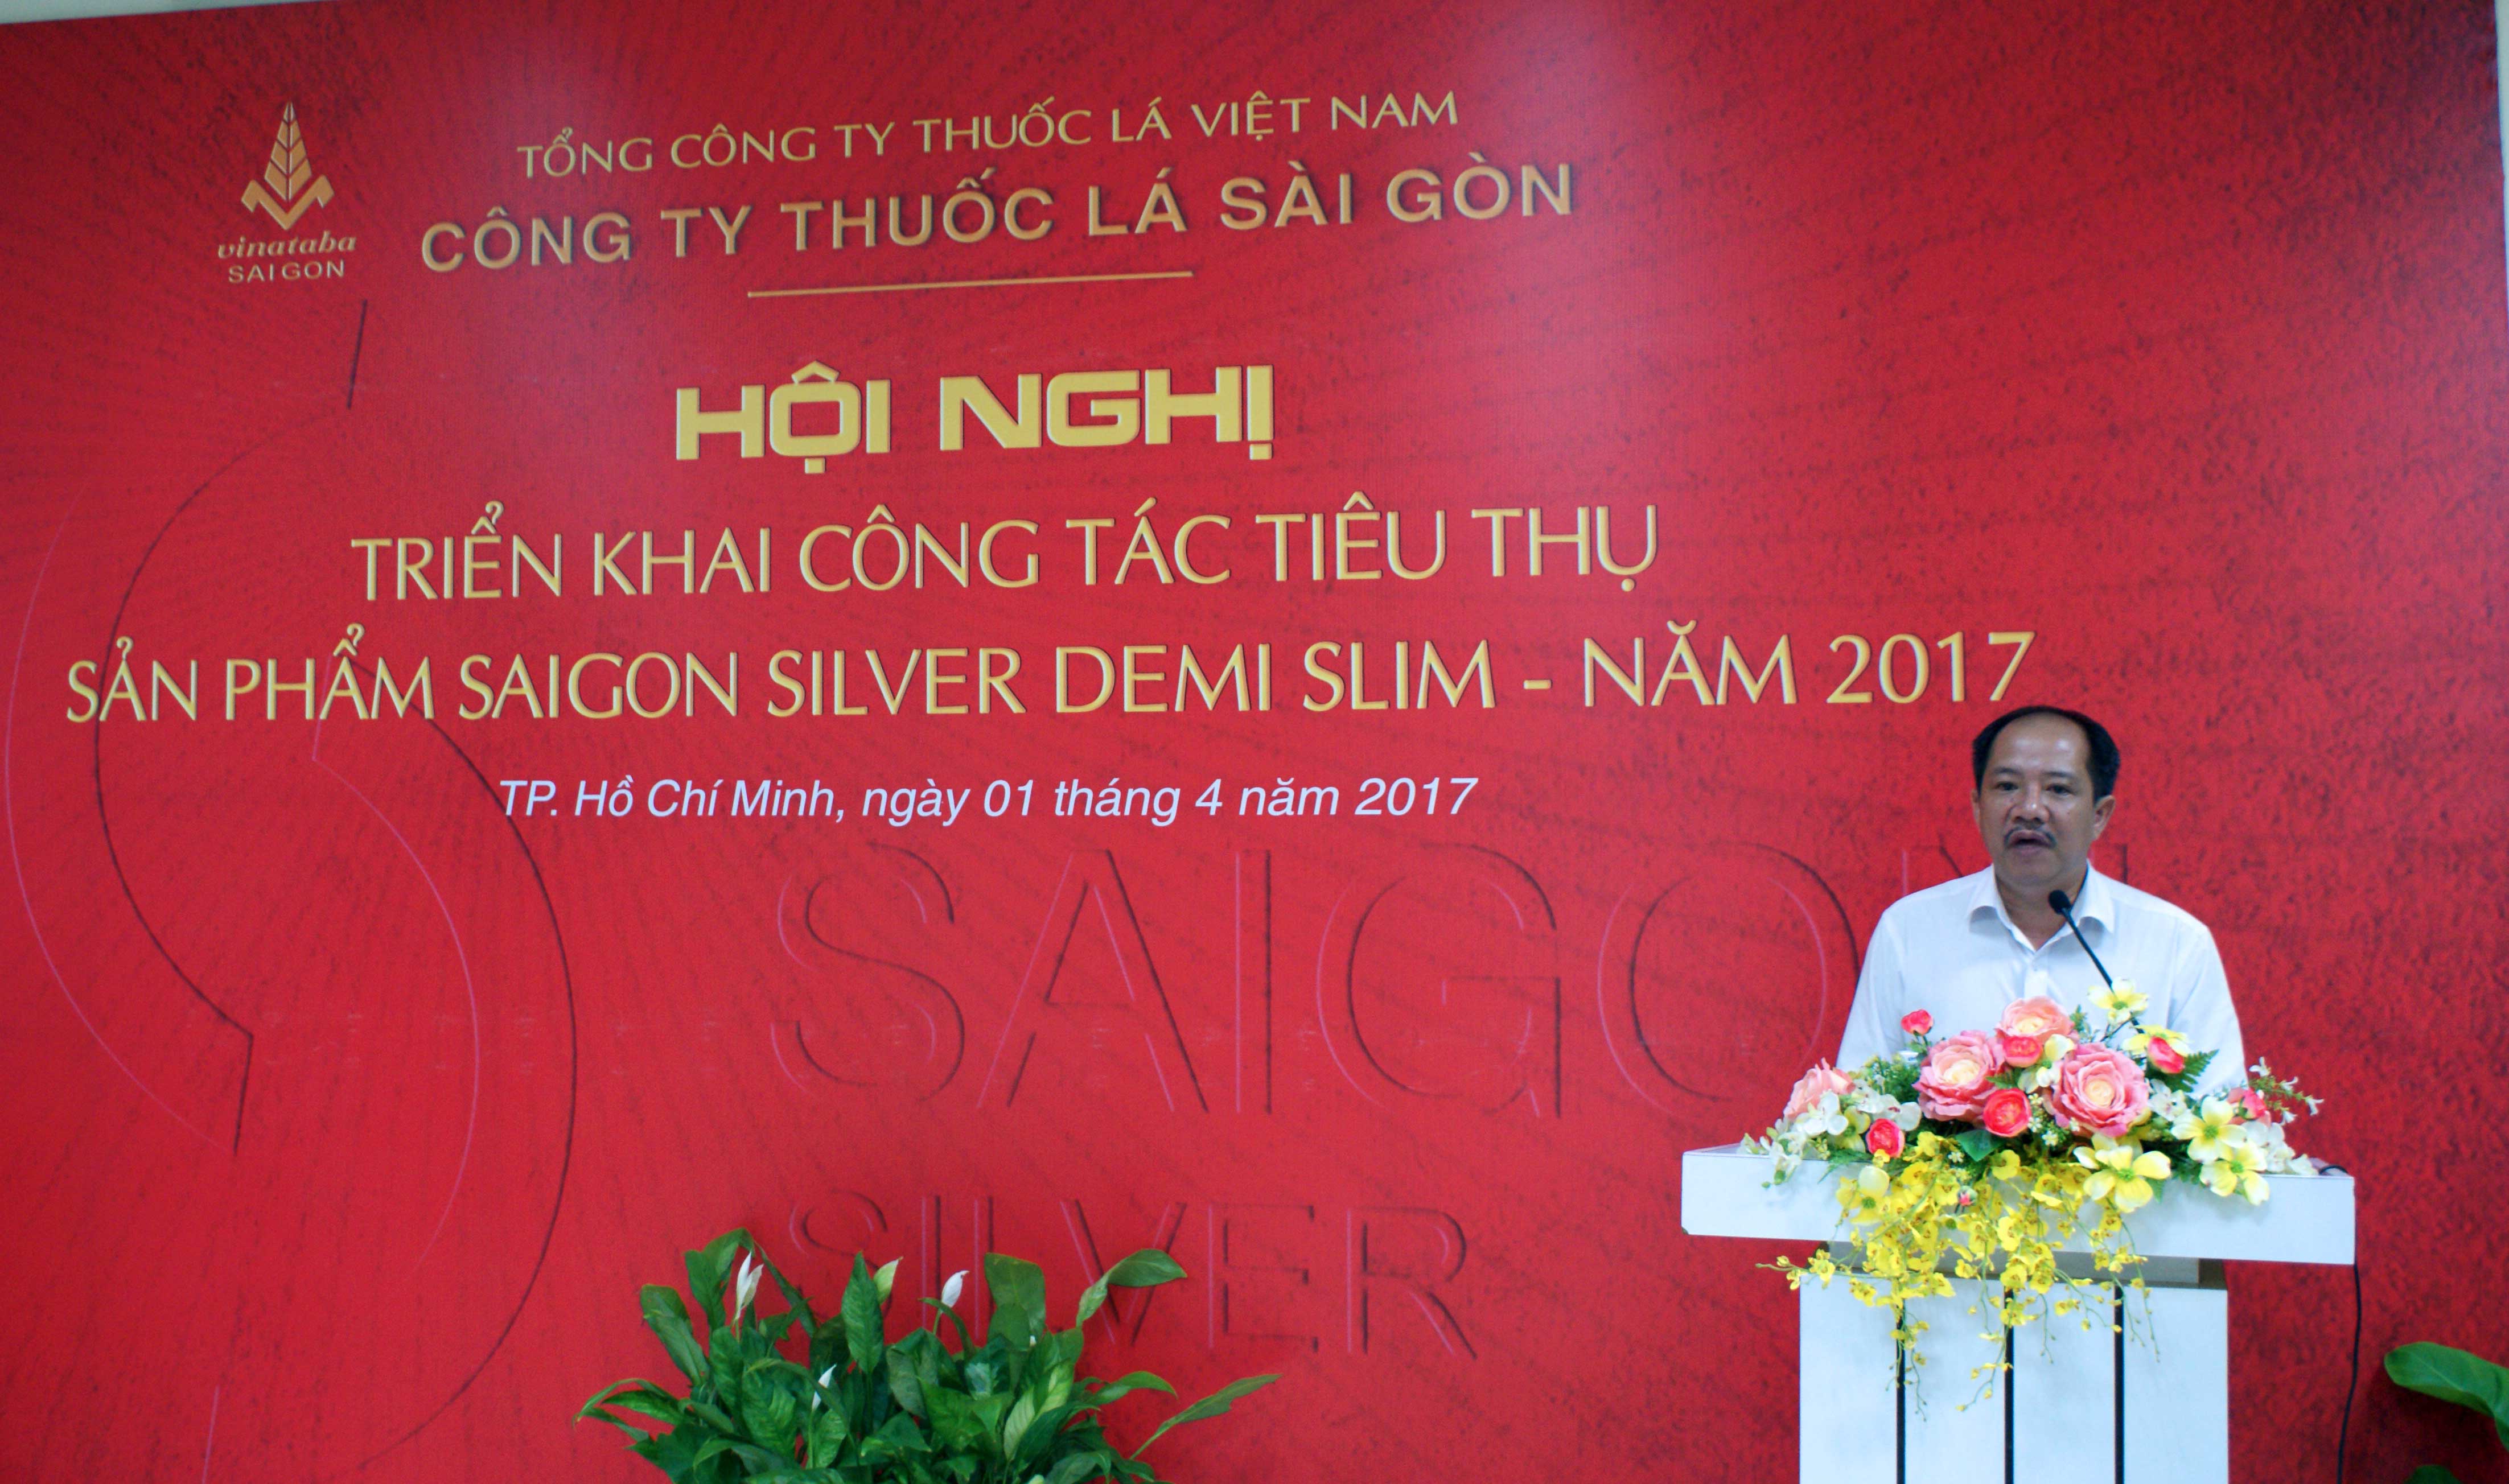 Ông Vũ Duy Hòa - Trưởng phòng Thị trường Công ty Thuốc lá Sài Gòn phát biểu tại hội nghị